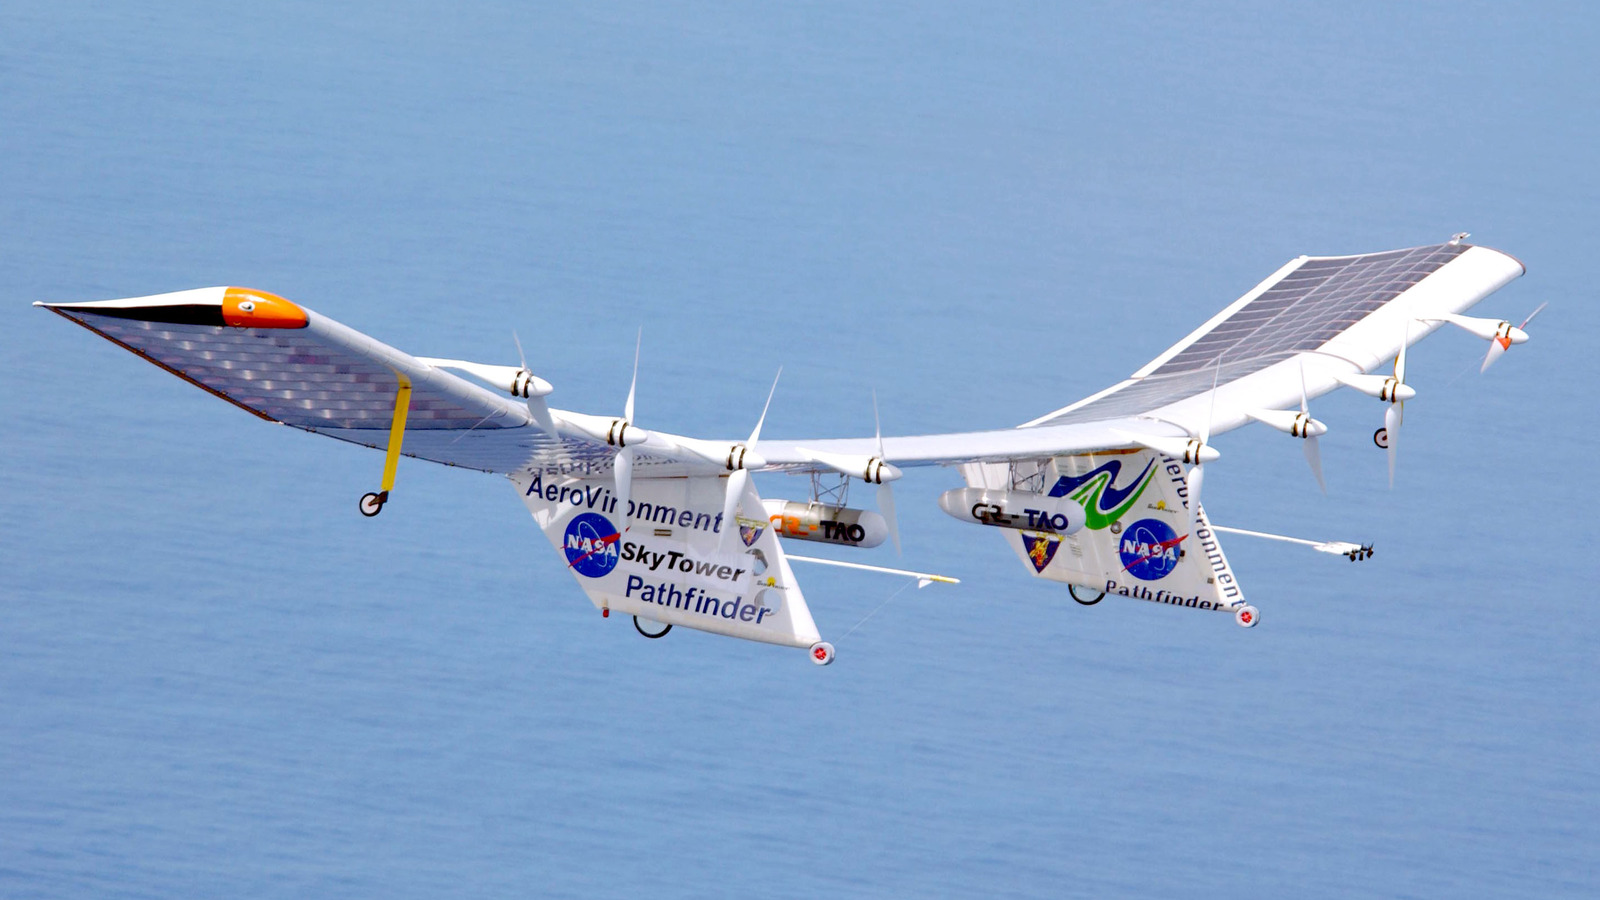 پروژه Pathfinder ناسا ثابت کرد که پرواز انرژی های تجدید پذیر تقریبا 30 سال پیش امکان پذیر بوده است.